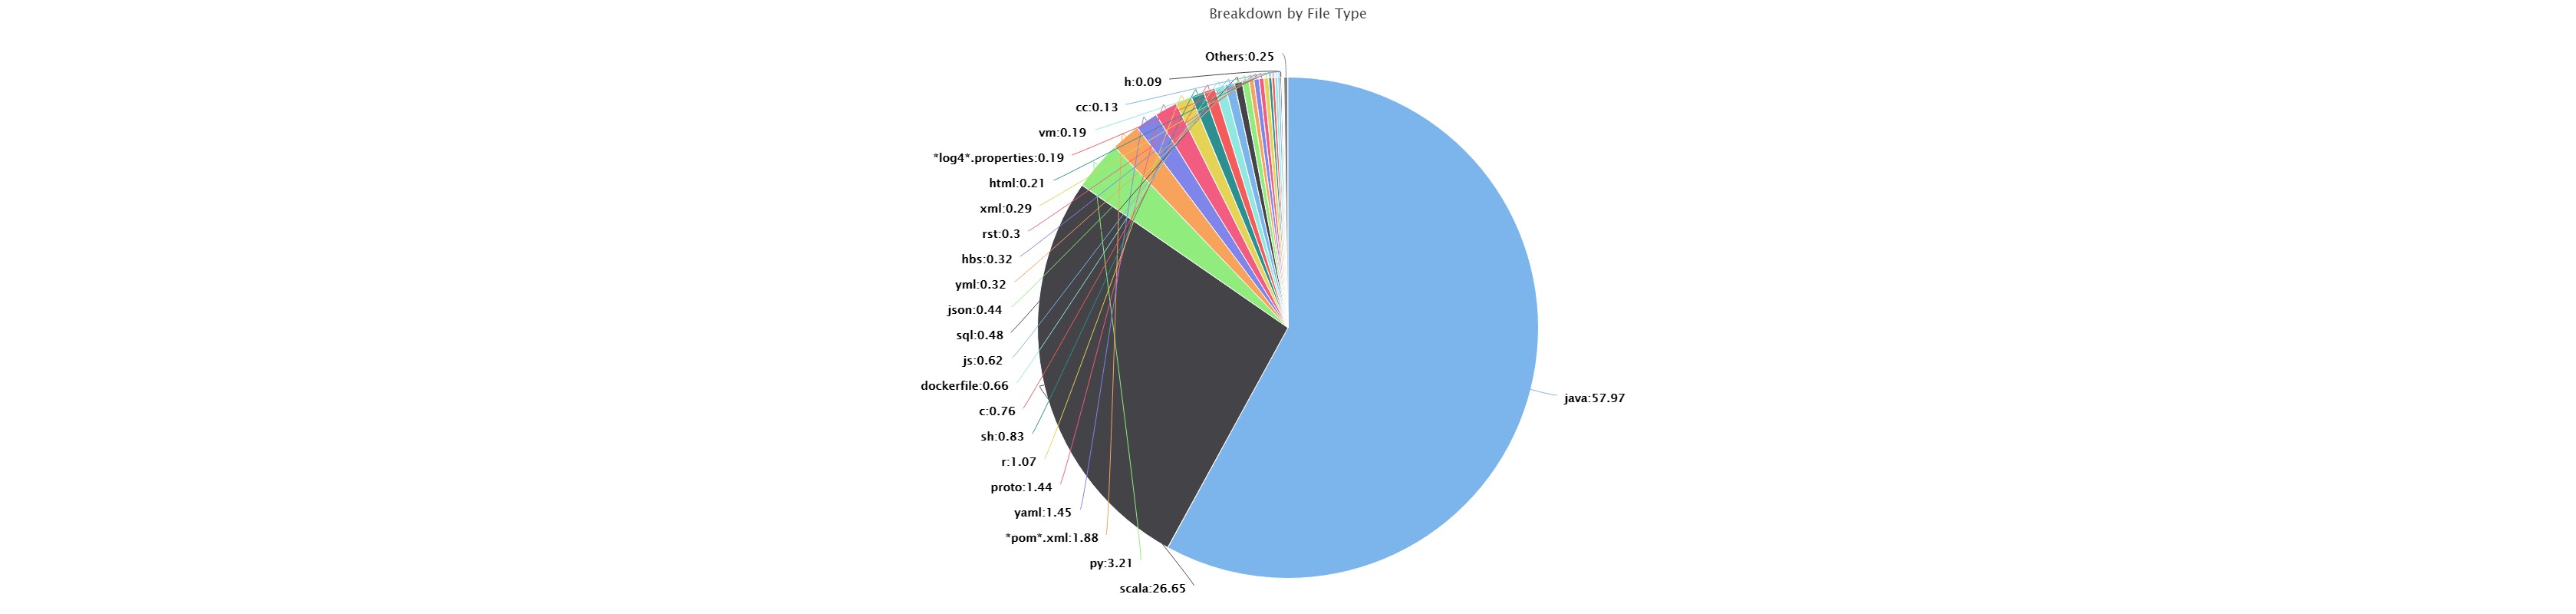 BlueOptima breakdown by file type screenshot